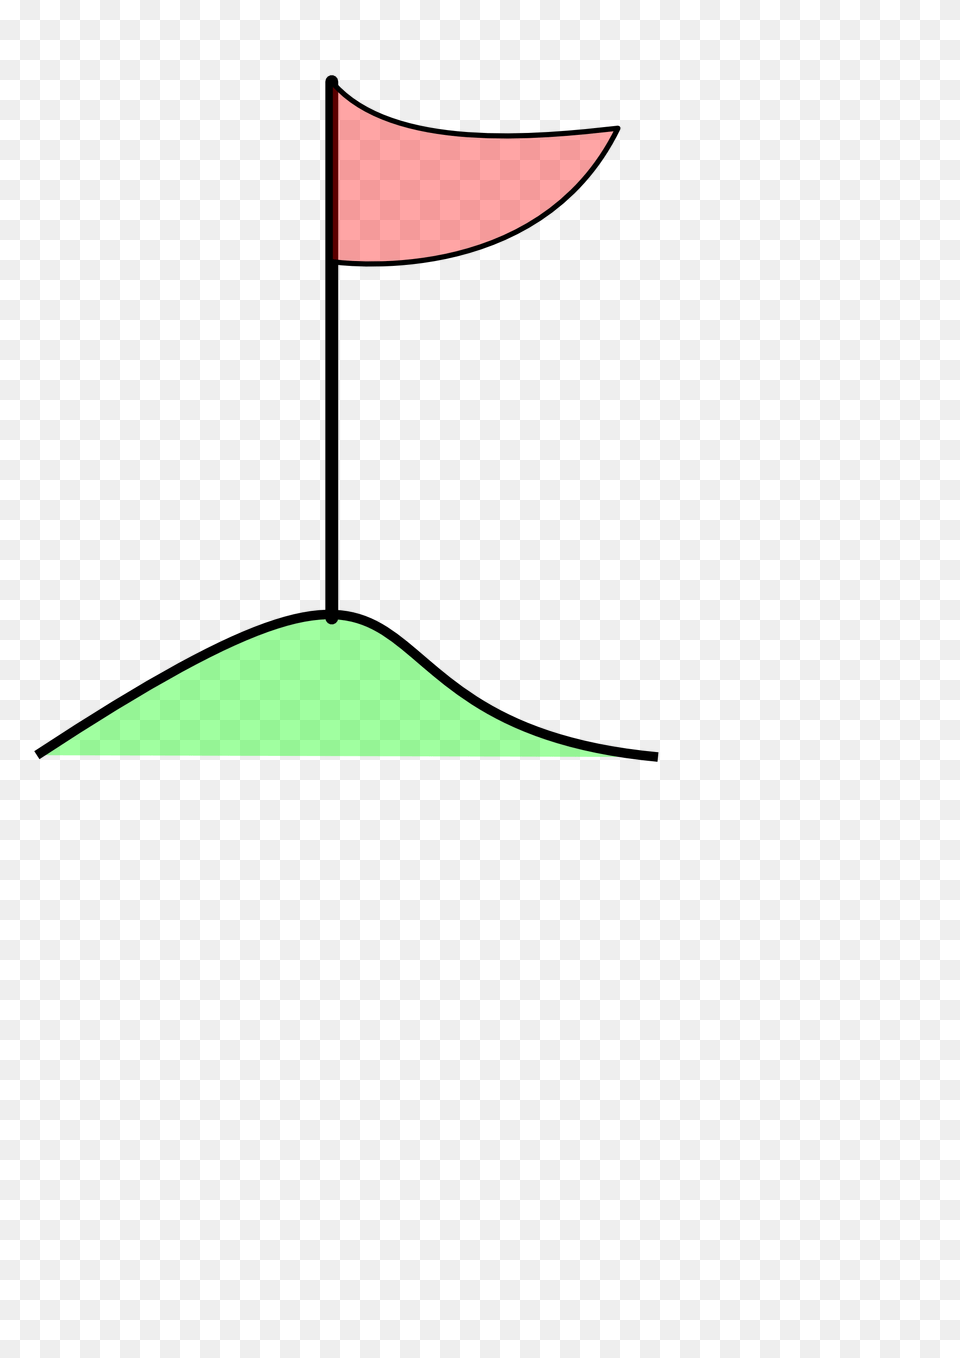 Golf Flag Clip Art Png Image